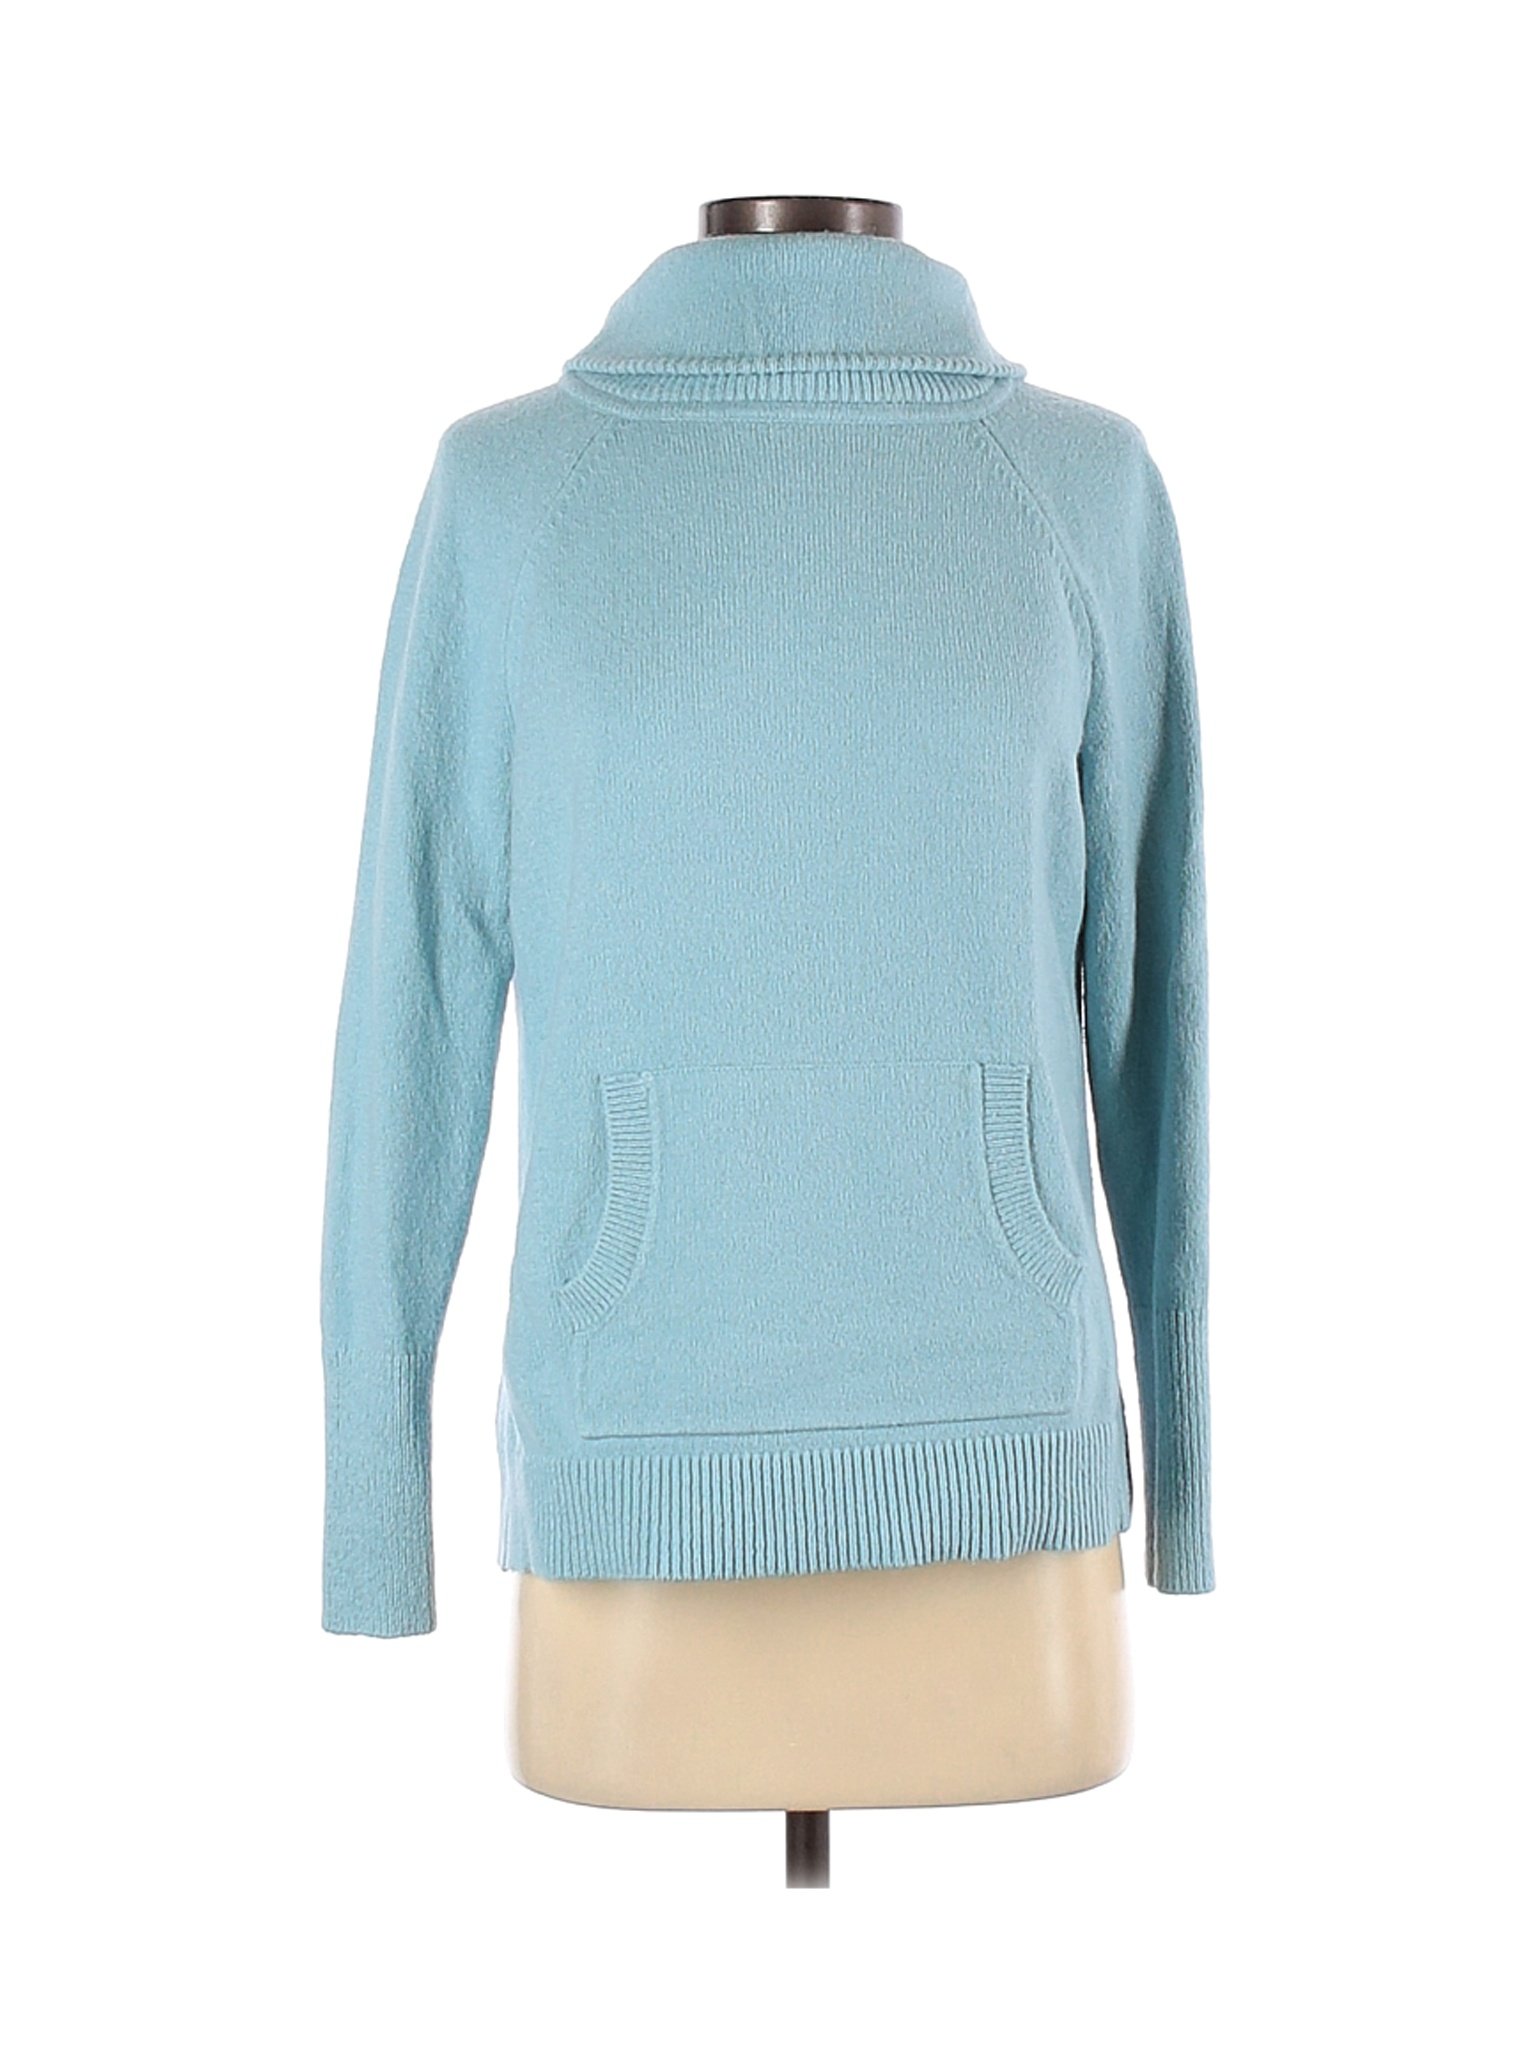 Ann Taylor LOFT Women Blue Turtleneck Sweater S | eBay